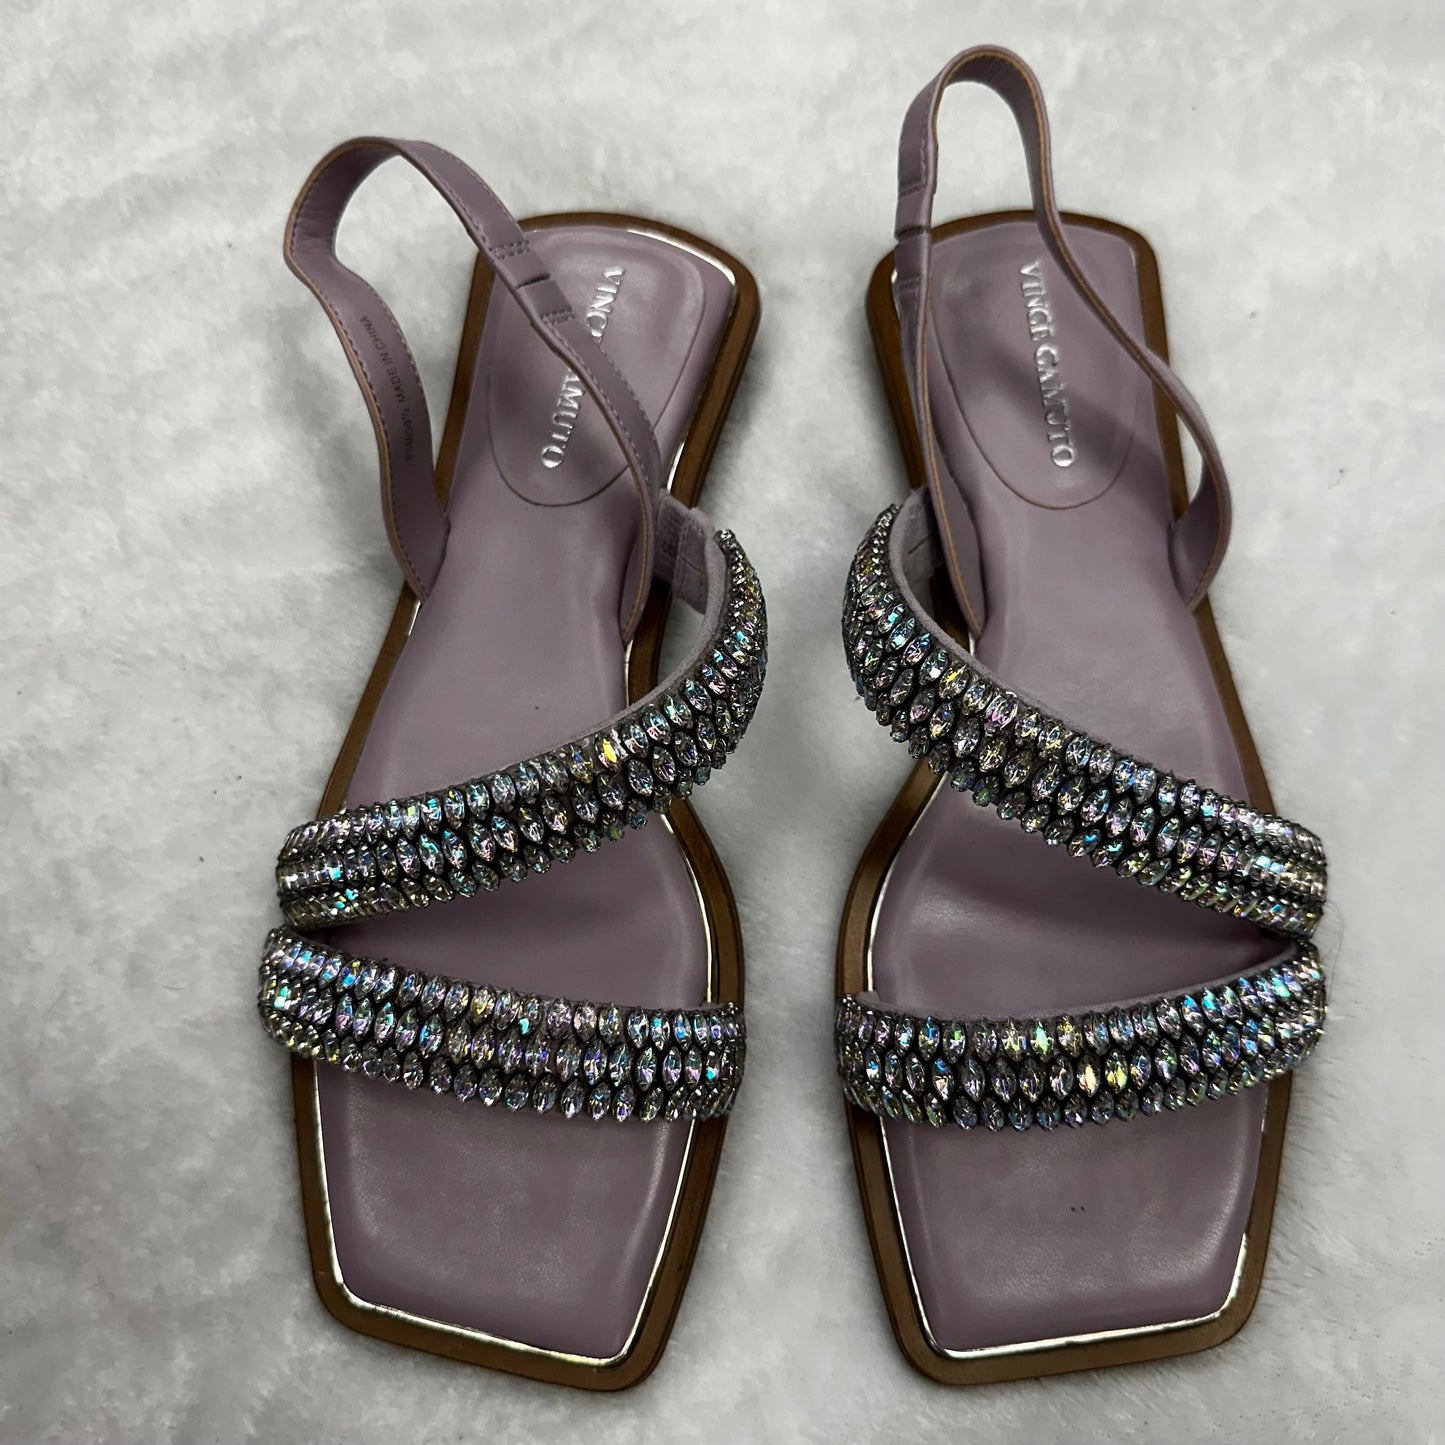 Lavender Sandals Flats Vince Camuto, Size 8.5